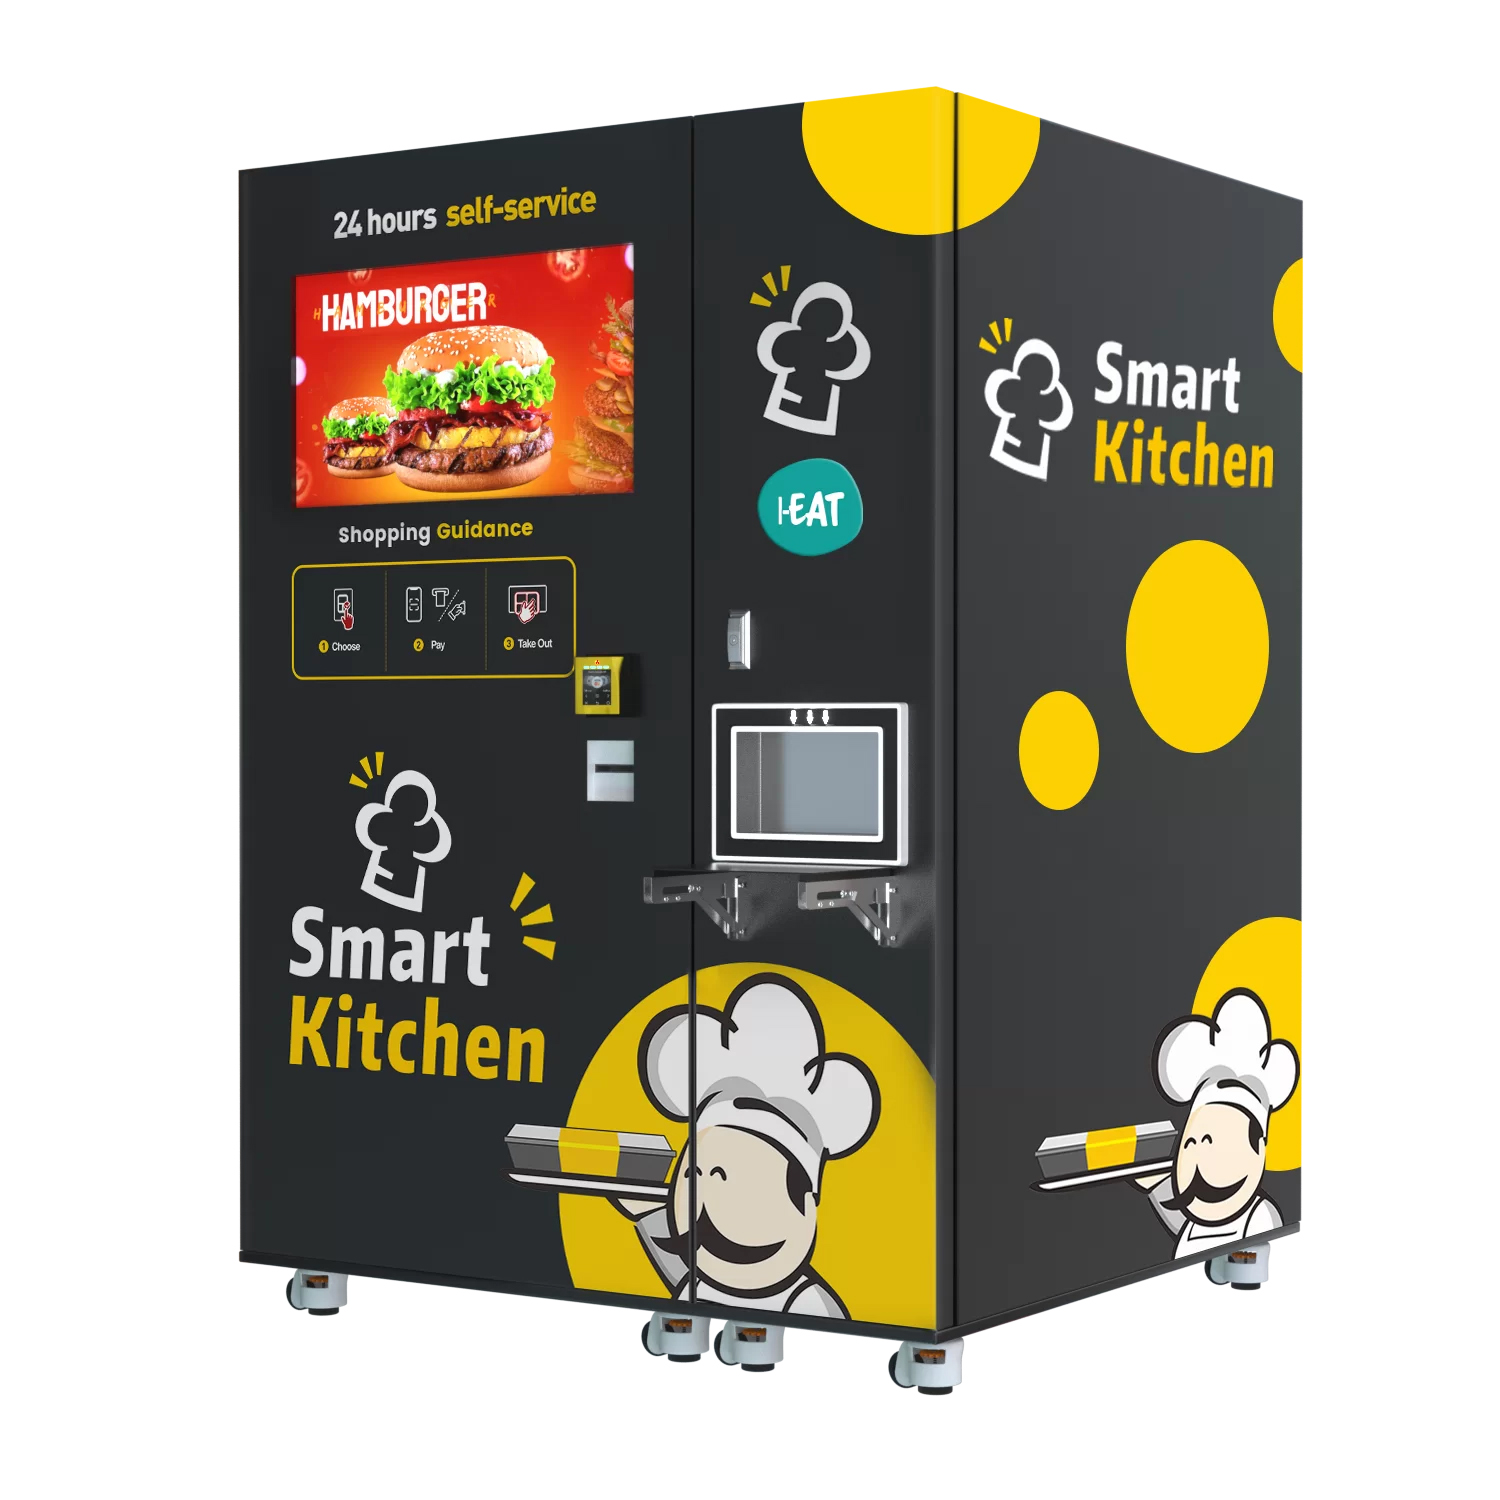 Hamburger Vending machine